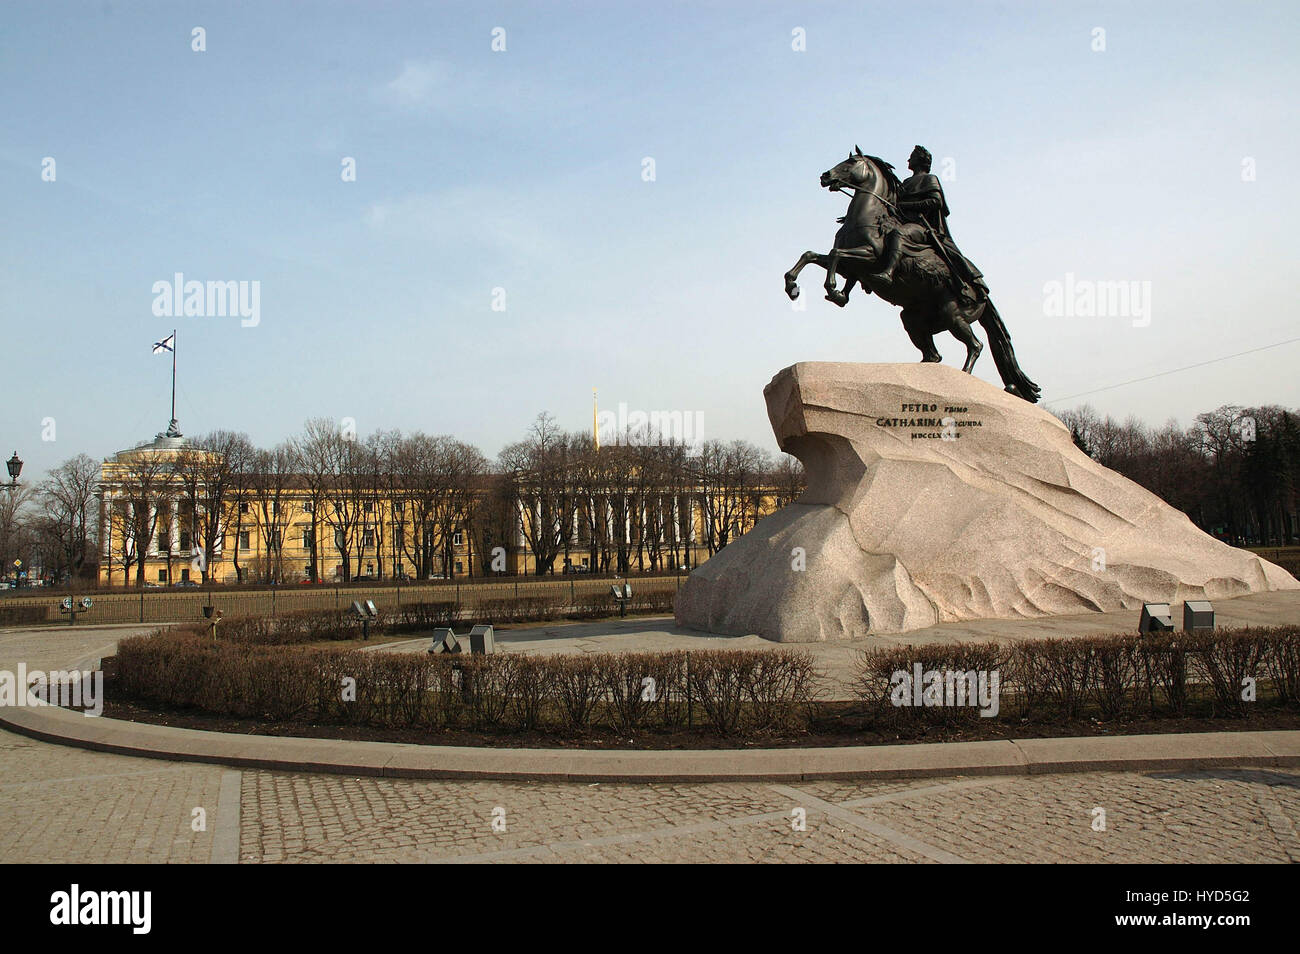 Pierre la Grande statue - l'Horseman de bronze est une statue équestre de Pierre le Grand sur la place du Sénat, Sankt-Peterburg, Russie Banque D'Images